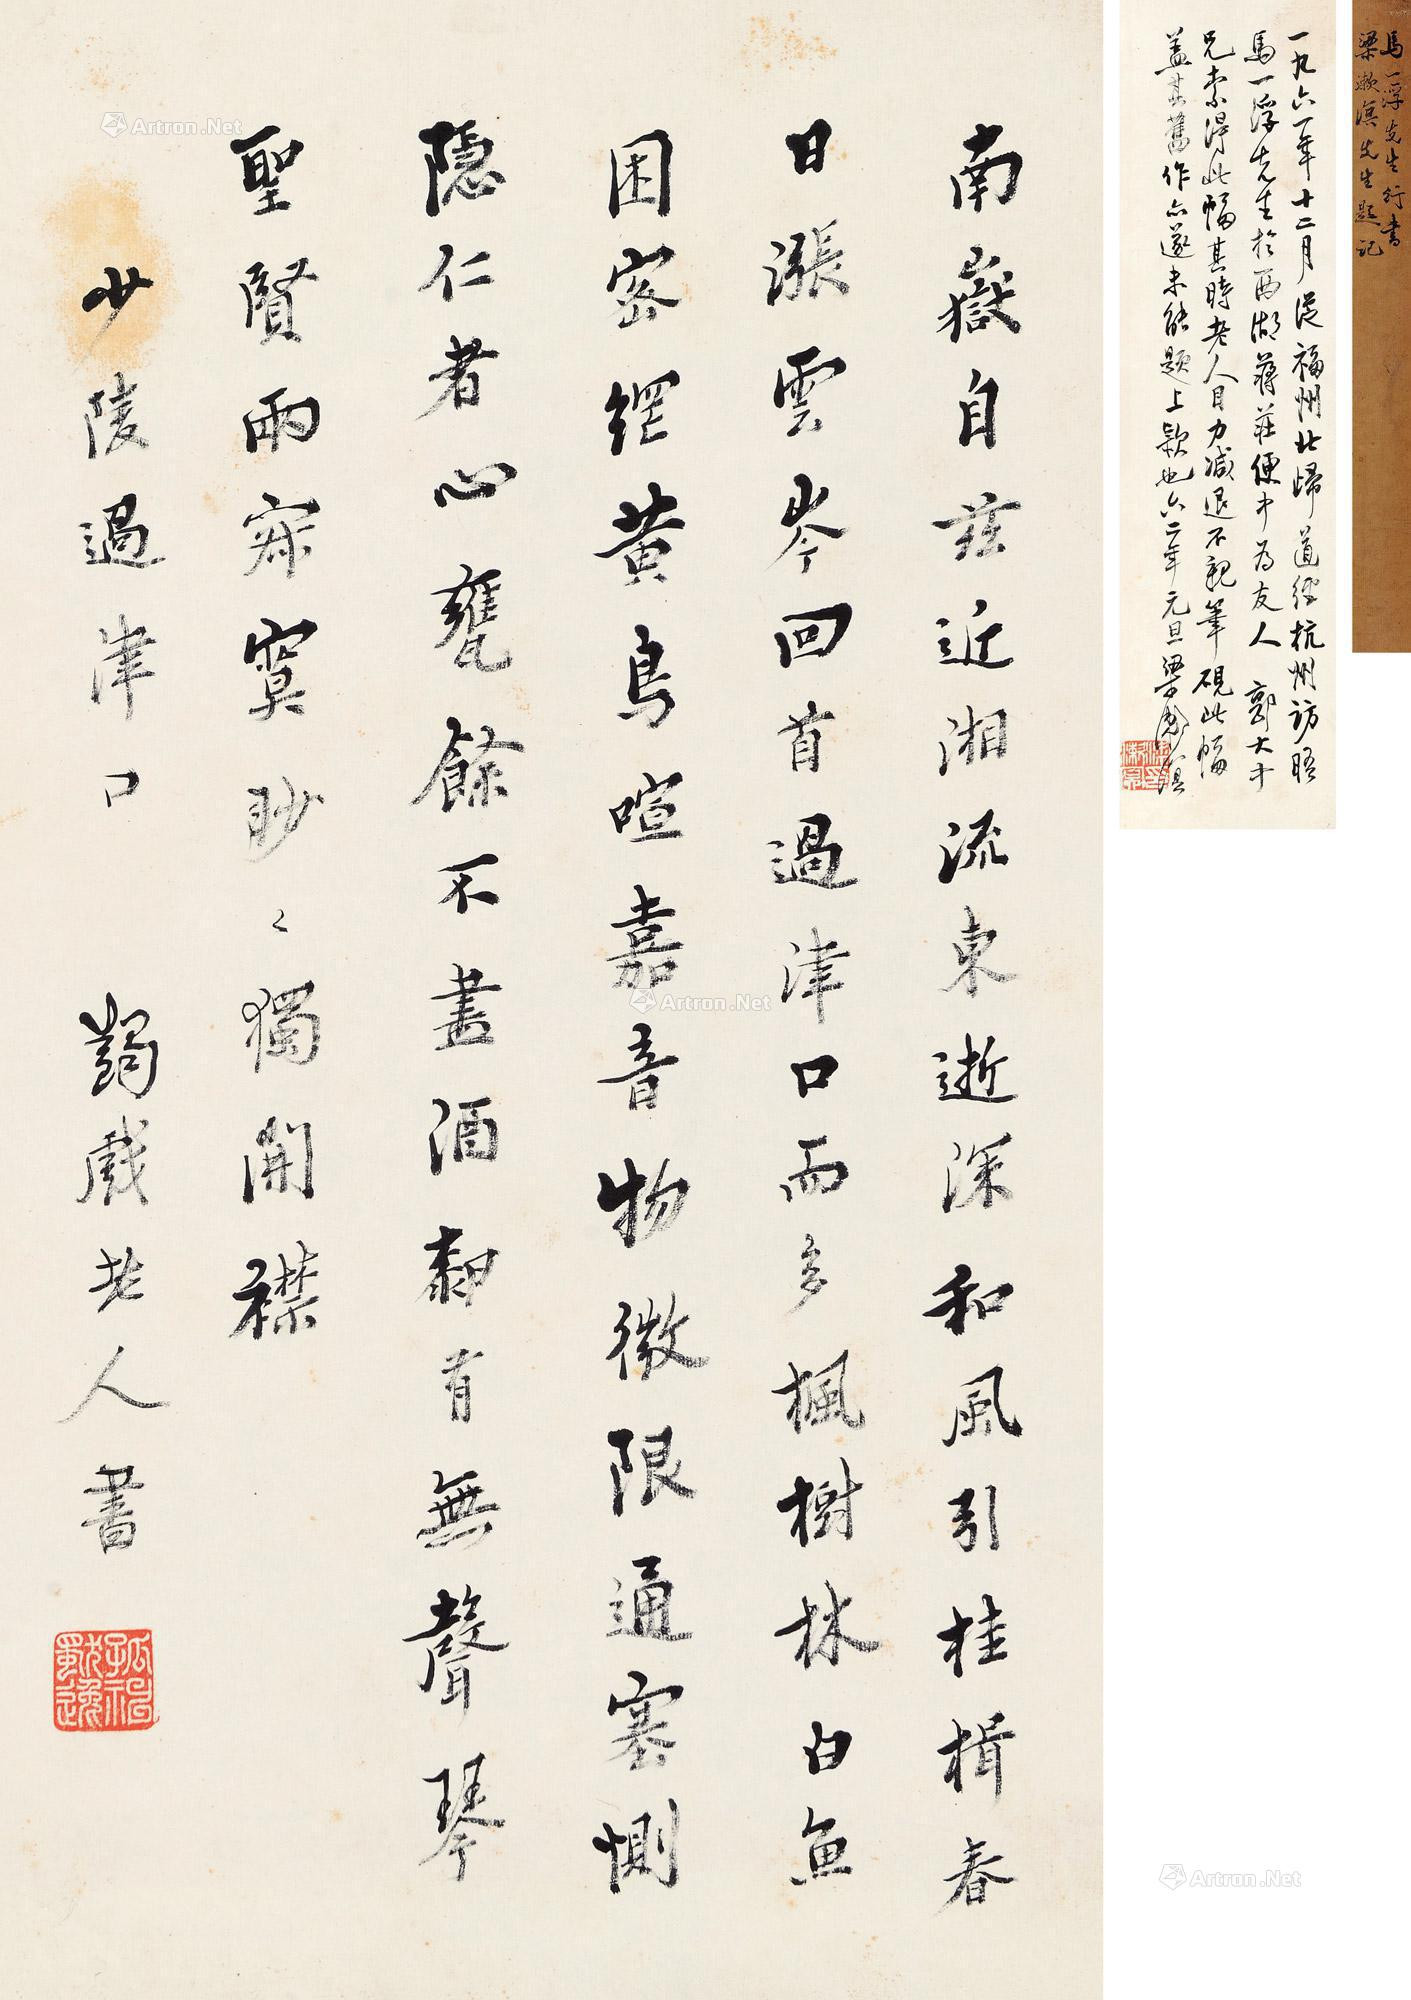 Calligraphy in Running Script